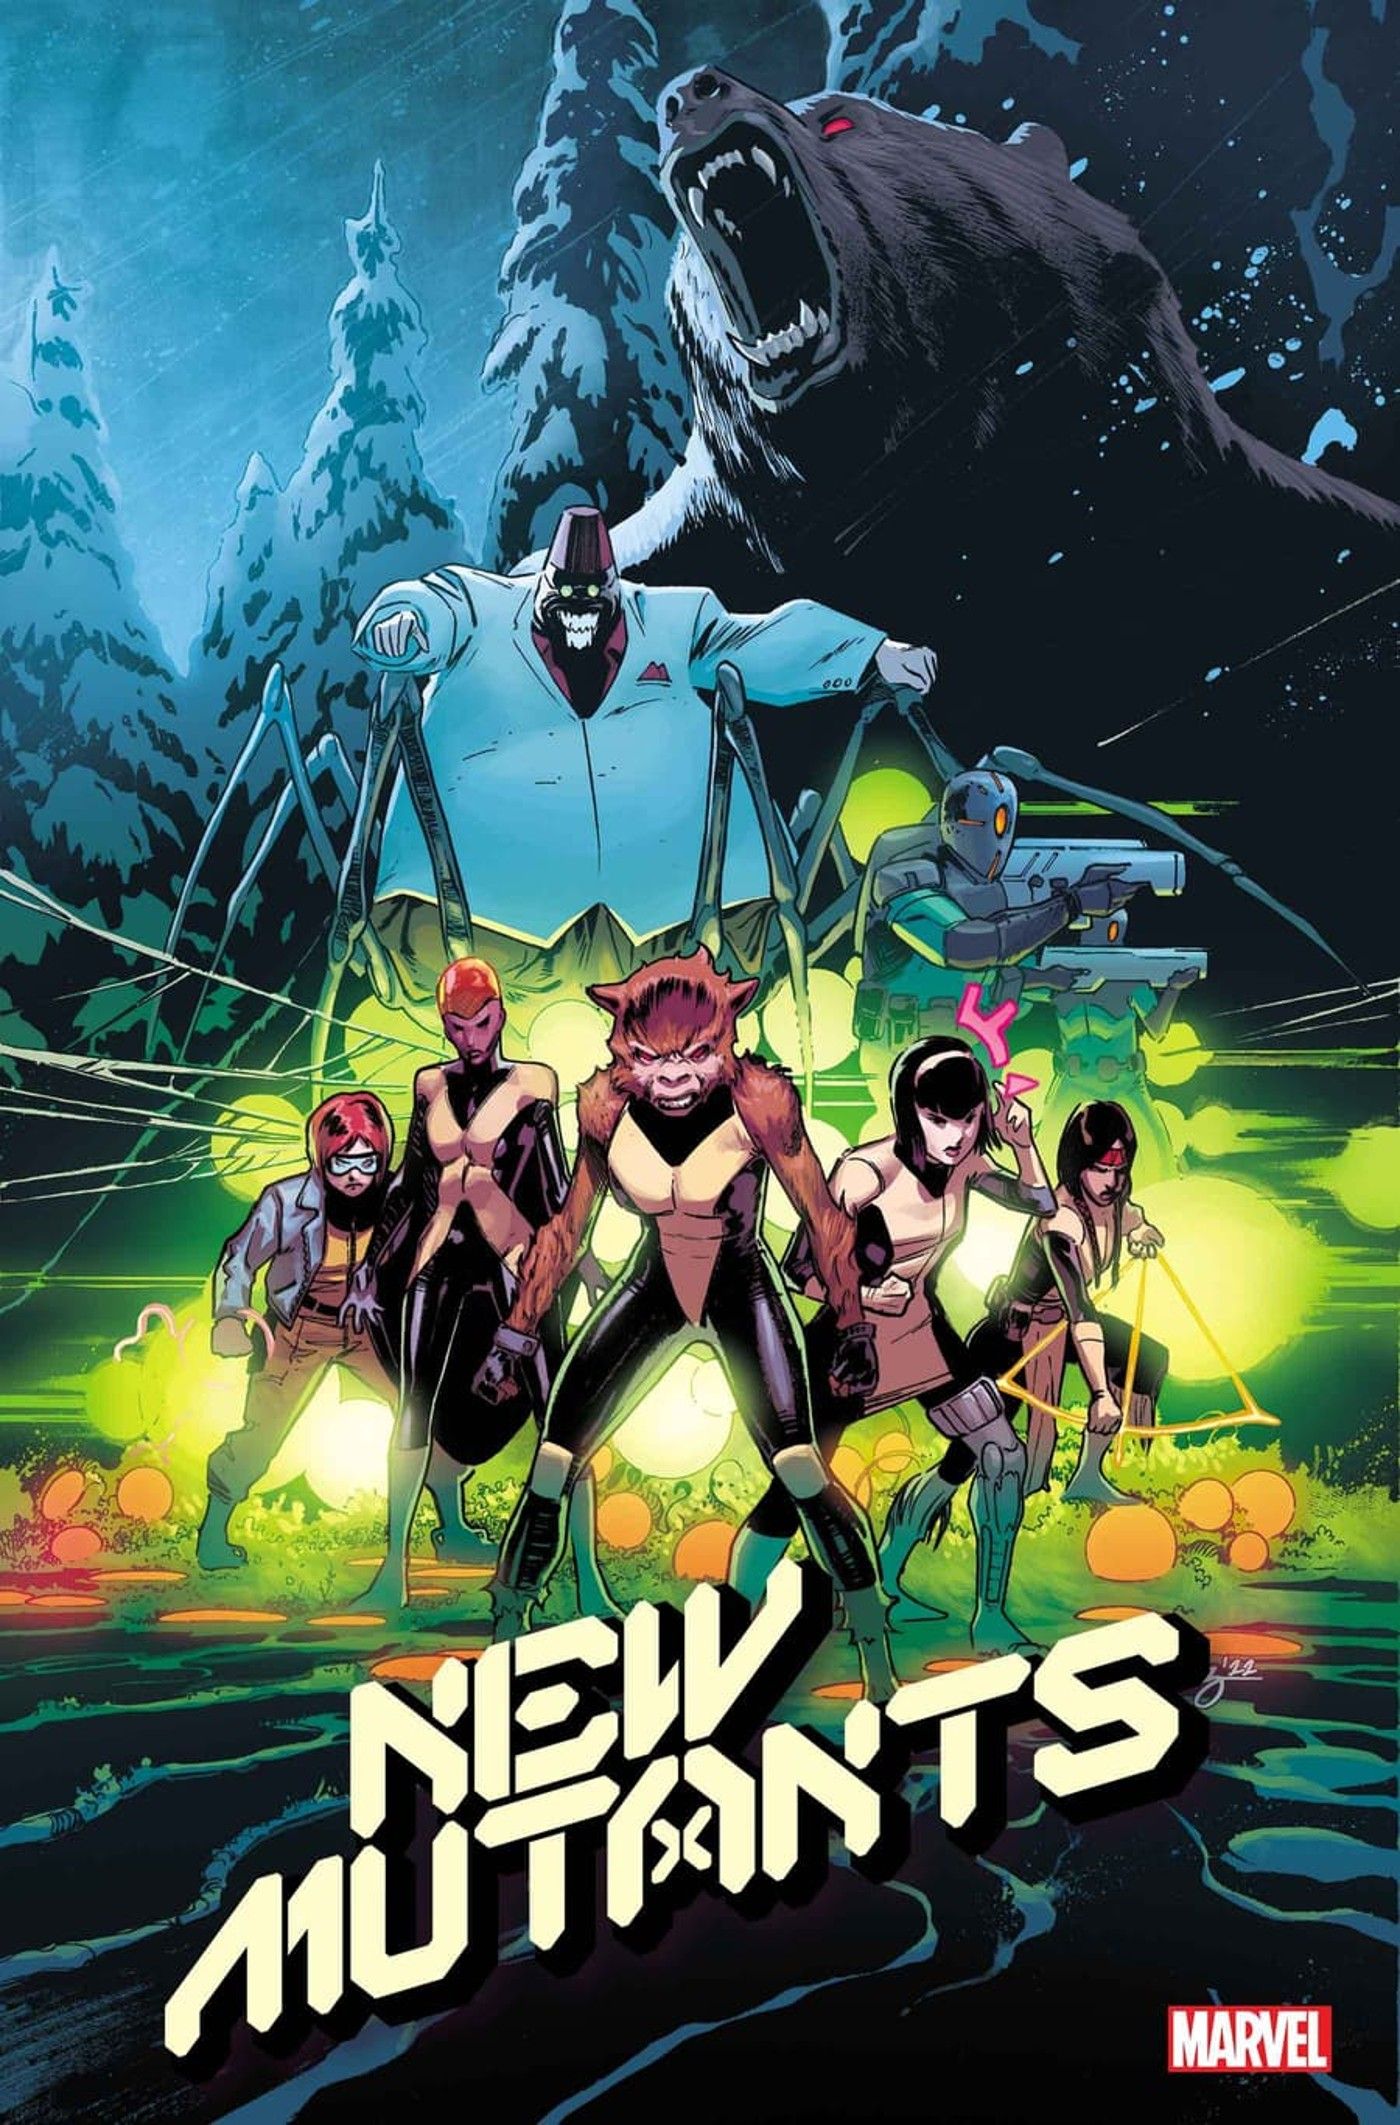 Couverture pour New Mutants Lethal Legion #1 avec Escapade, Cerebella, Wolfsbane, ,Karma et Dani Moonstar